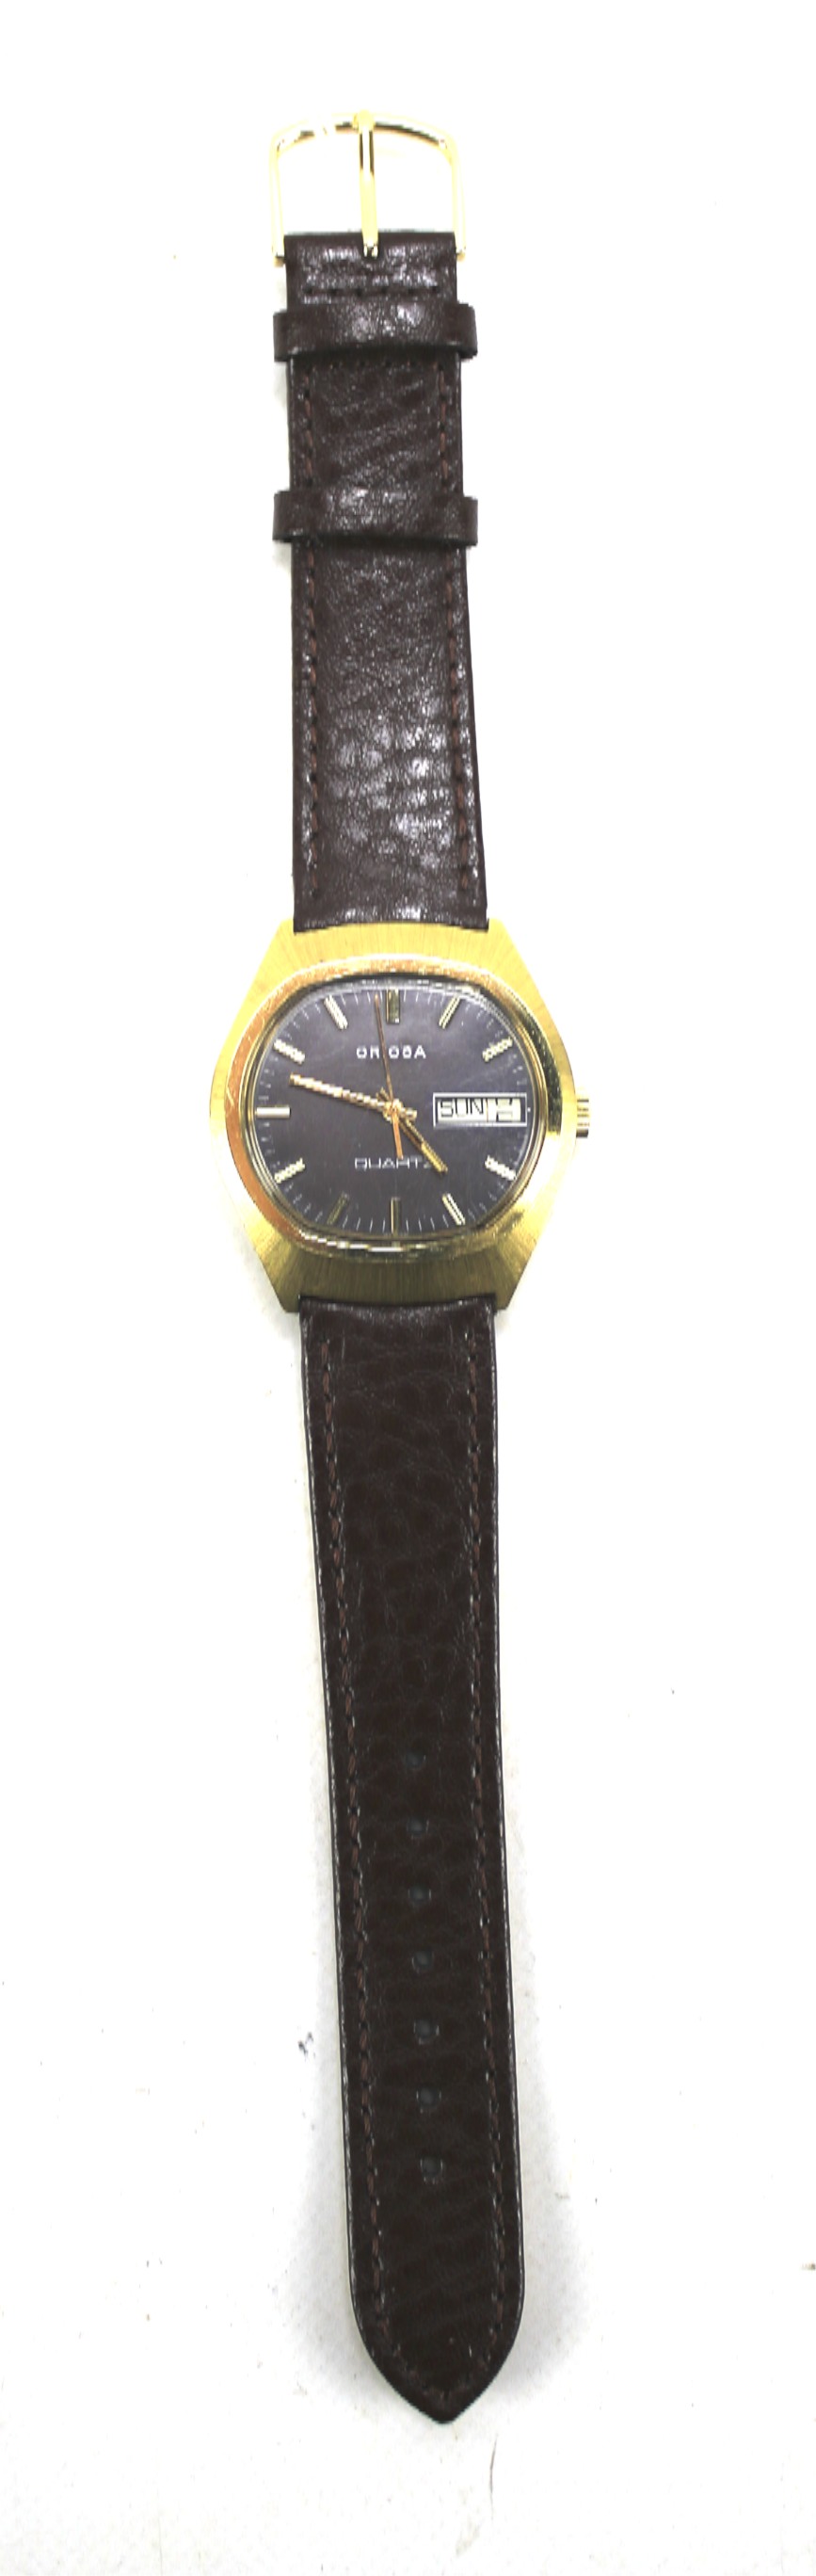 A vintage 1960s Oriosa quartz wristwatch. - Image 2 of 2